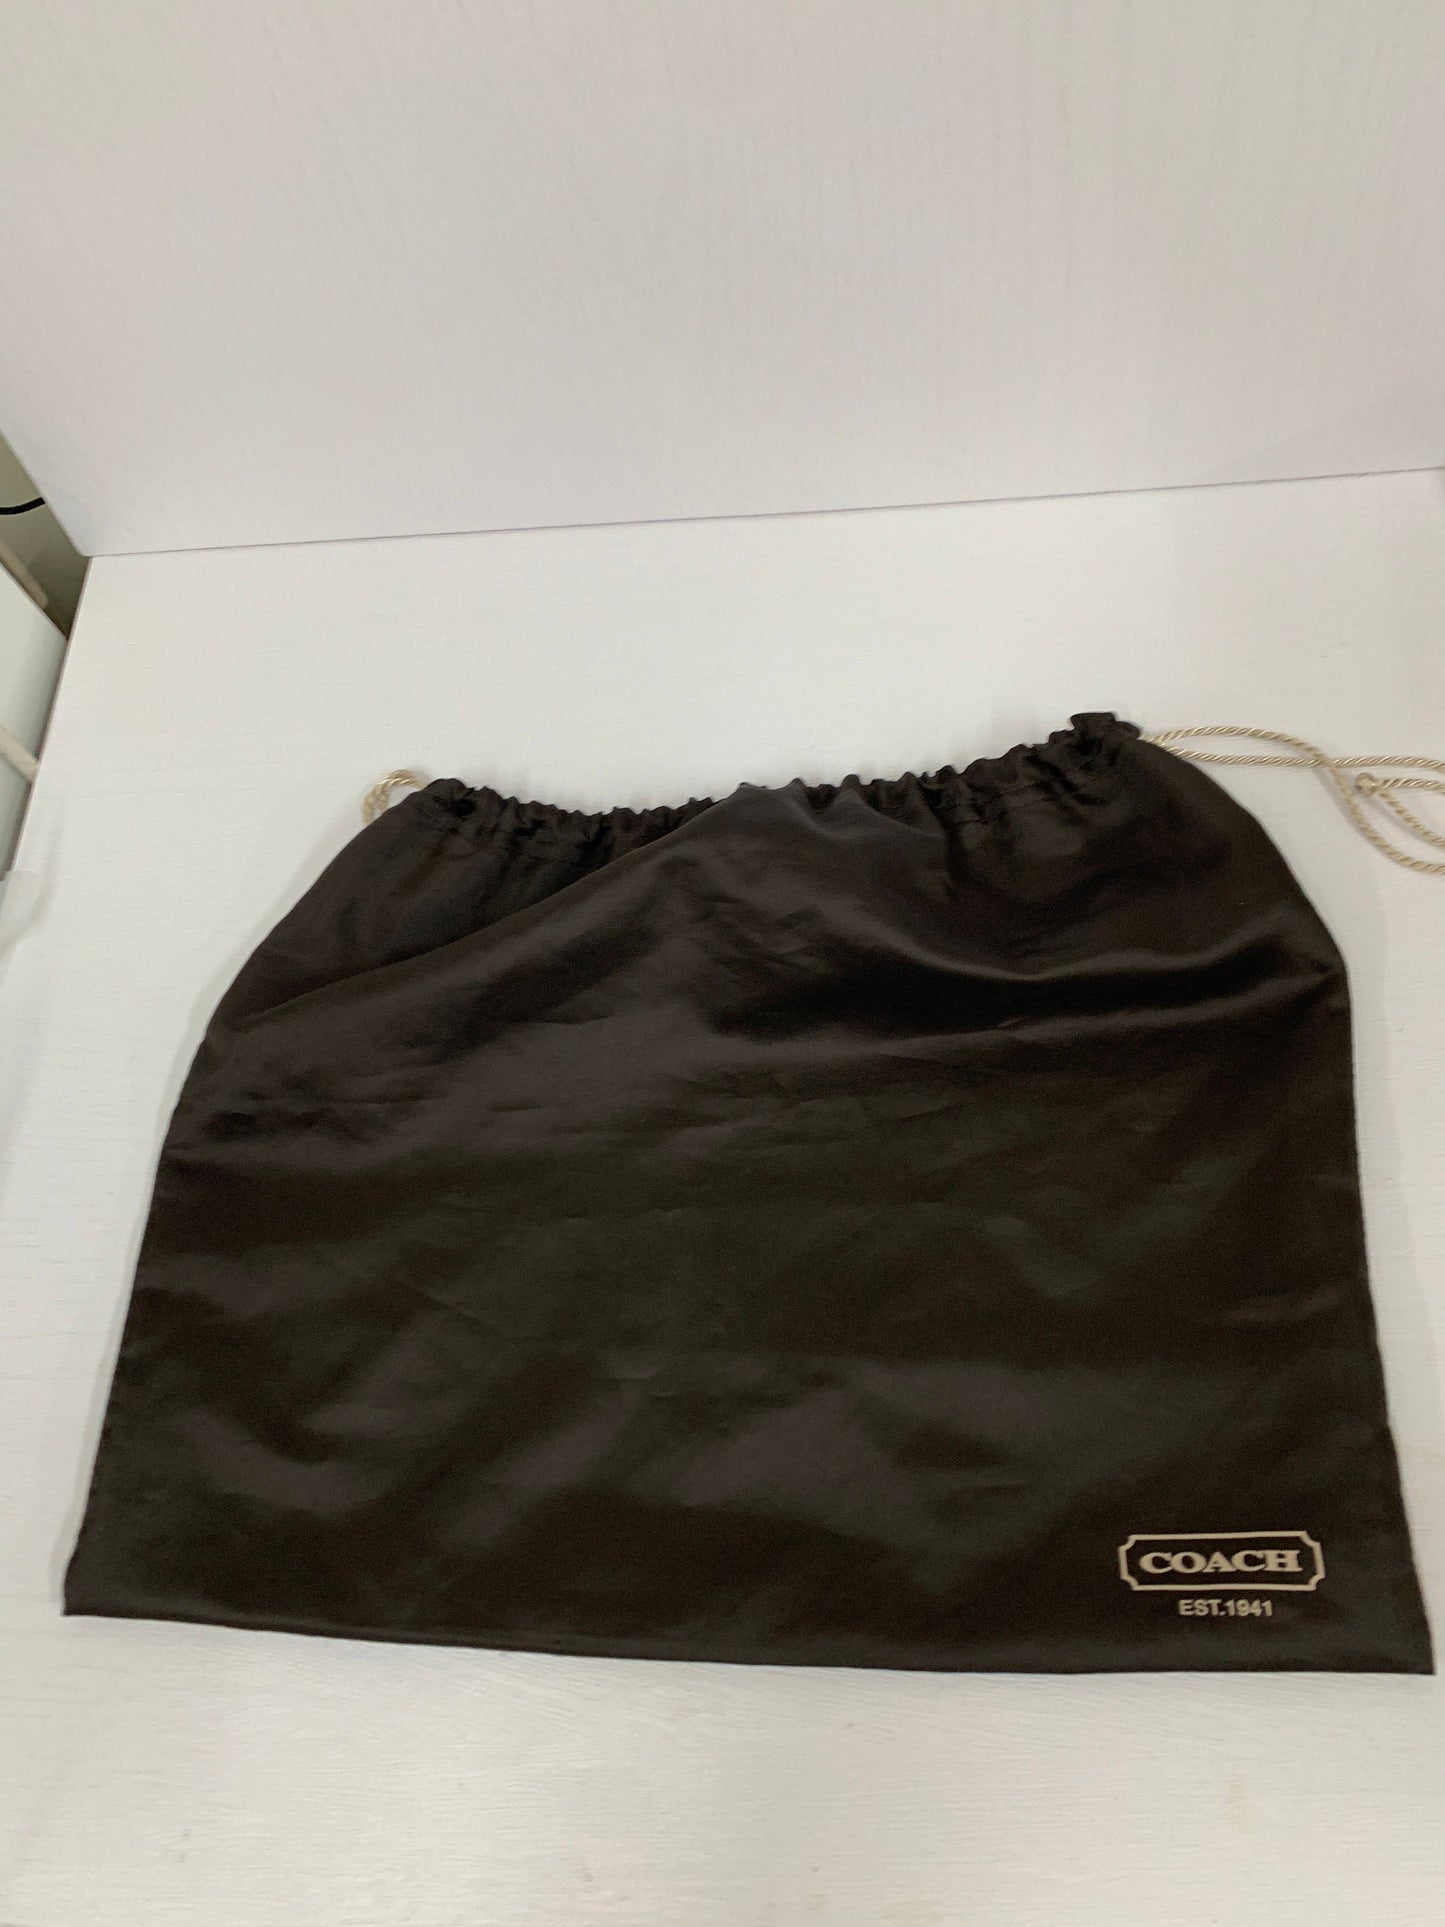 Coach dust bag for shoulder handbag wallet belt tote boot gift bag